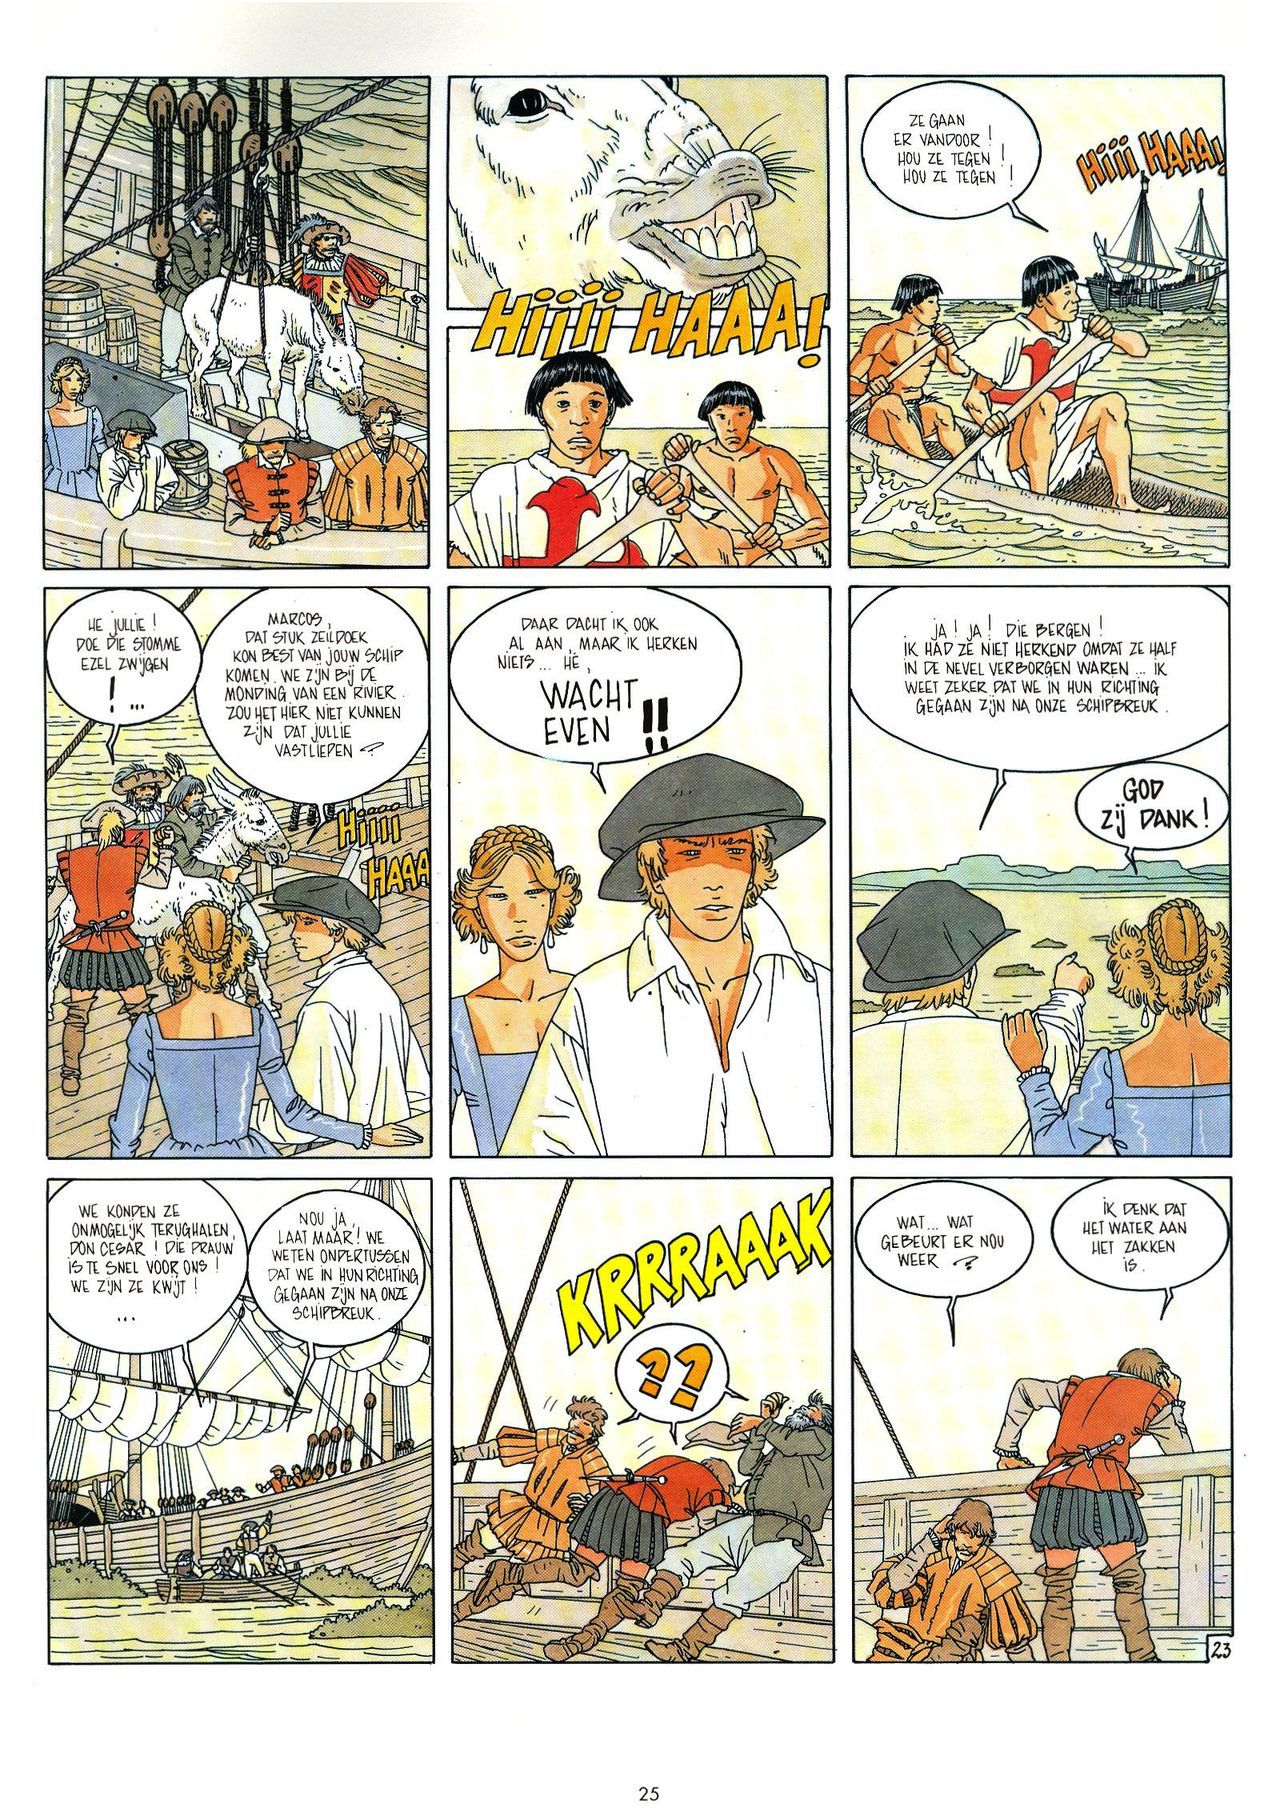 Eldorado - 03 - De Jaguarmensen (Dutch) Franstalige strips die op deze site staan, hier is de Nederlandse uitgave! 25